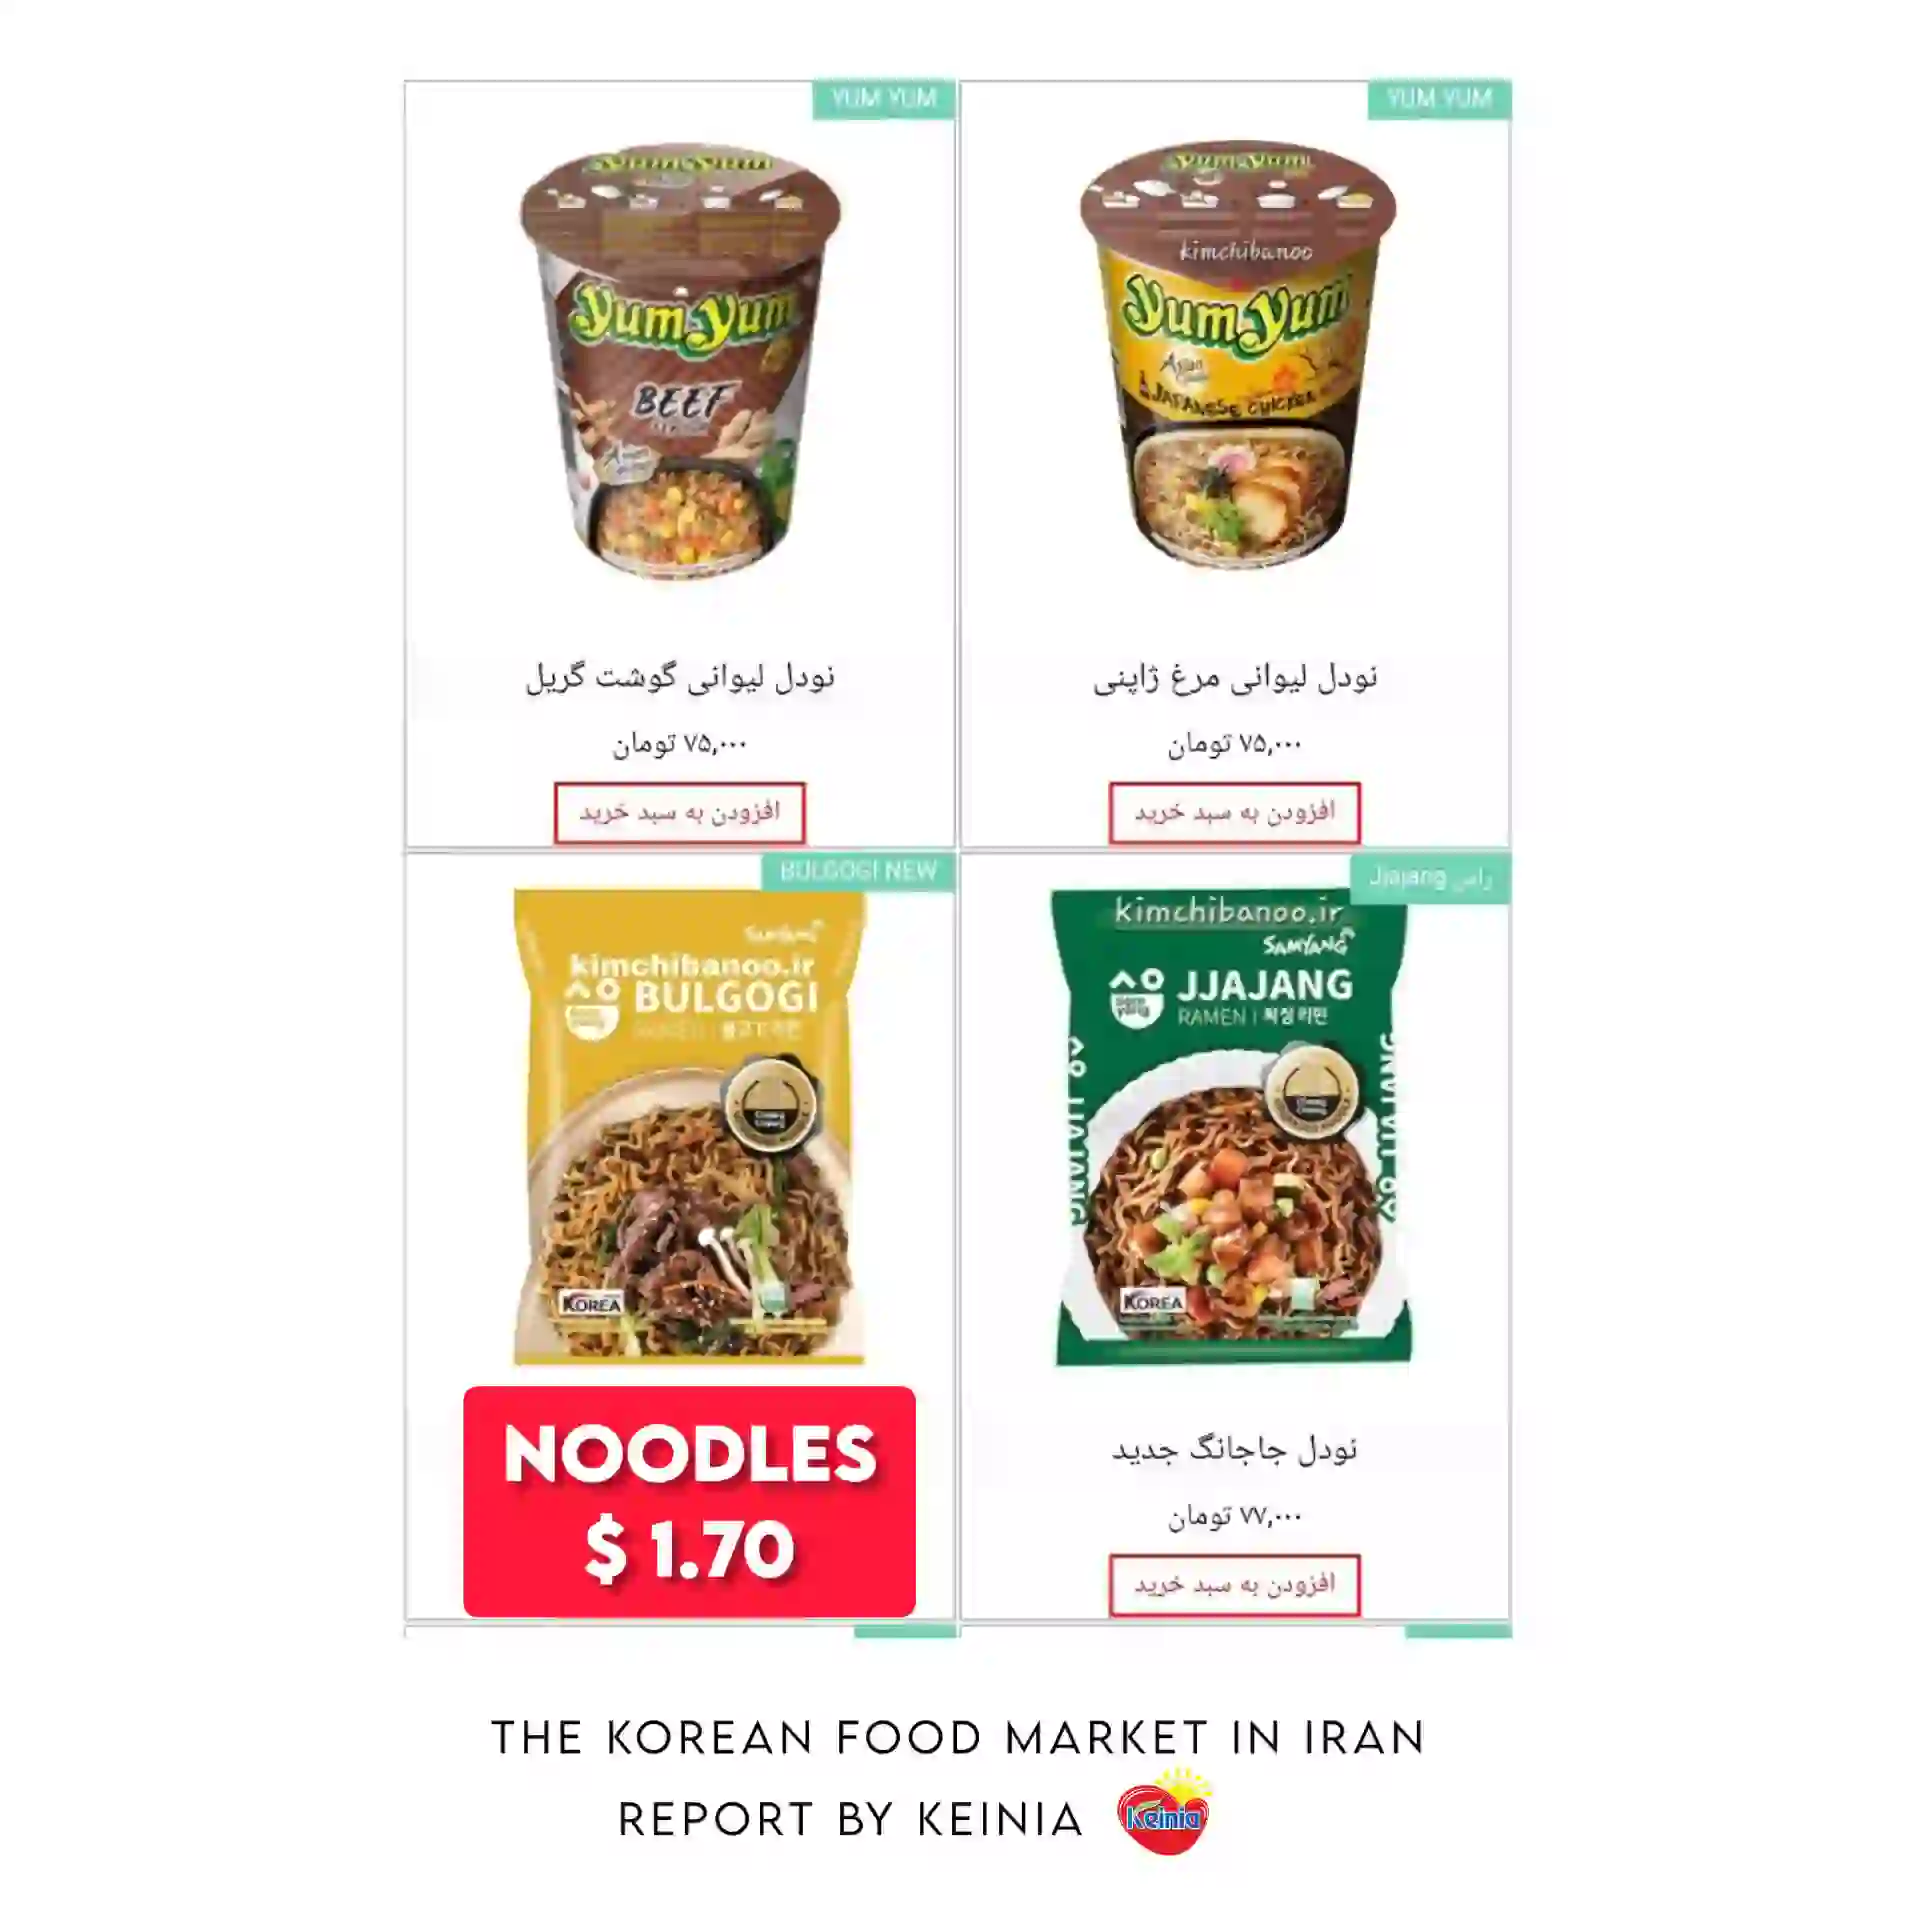 Korean noodles in Iran